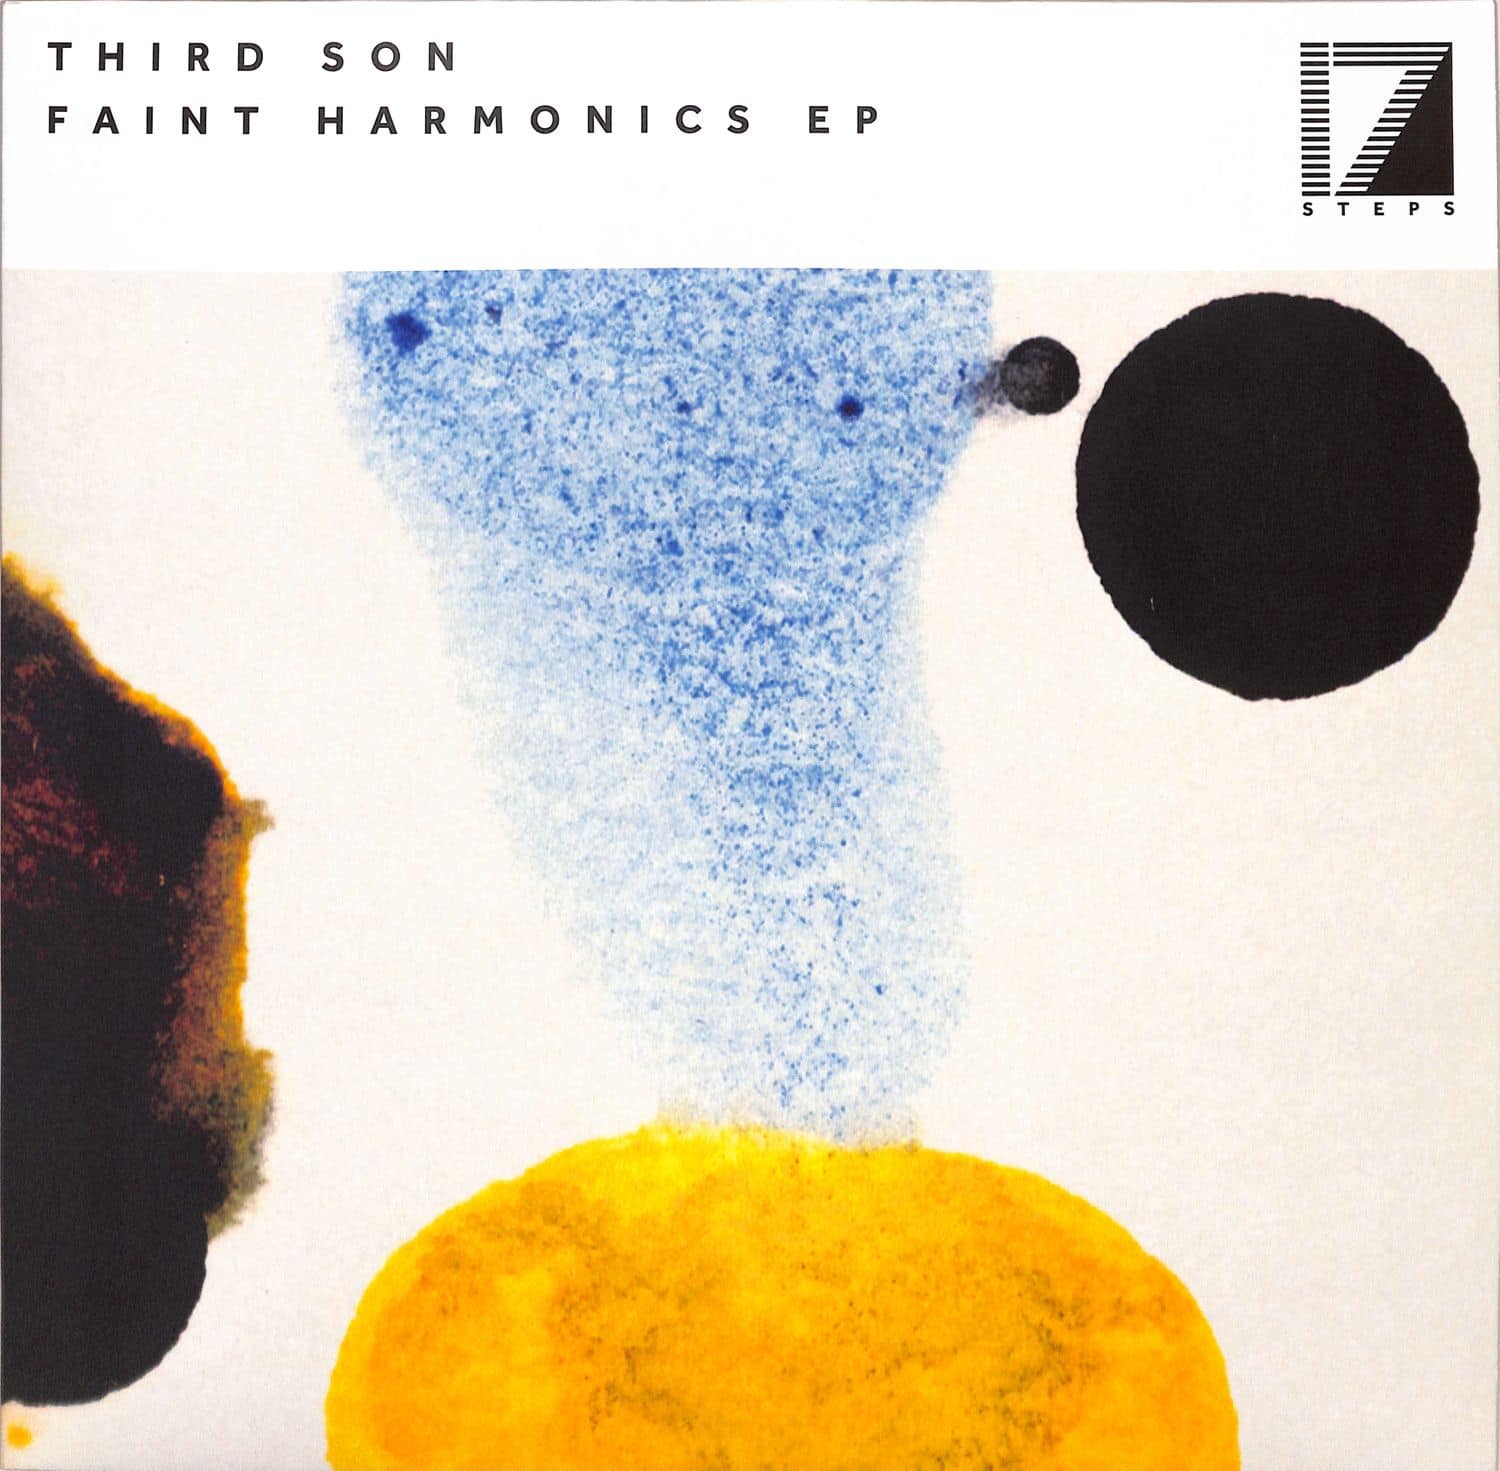 Third Son - FAINT HARMONICS EP